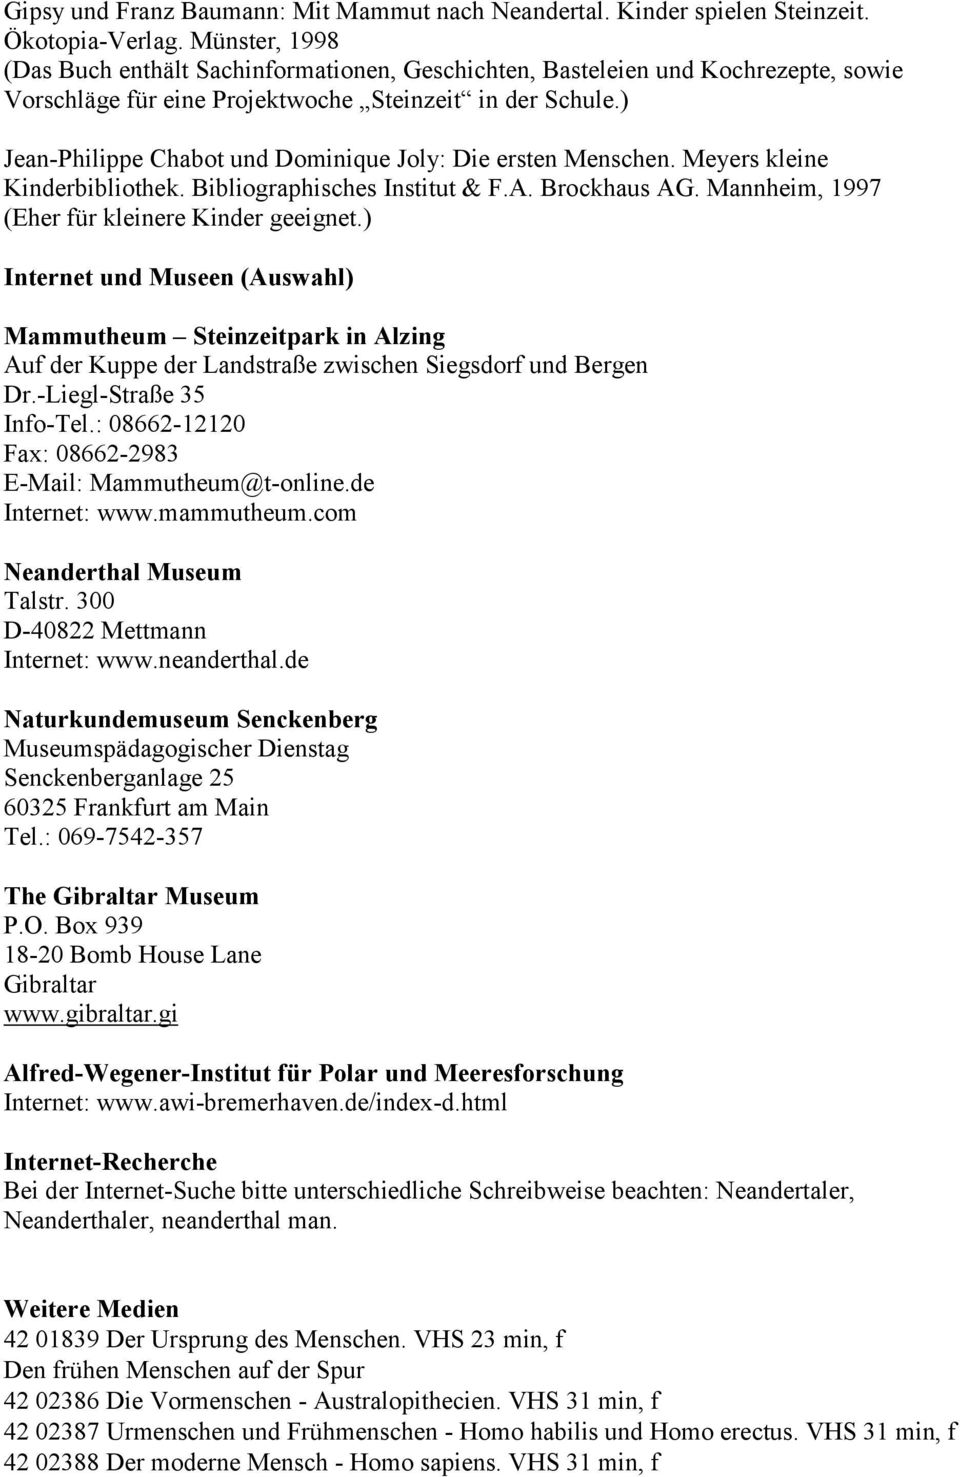 ) Jean-Philippe Chabot und Dominique Joly: Die ersten Menschen. Meyers kleine Kinderbibliothek. Bibliographisches Institut & F.A. Brockhaus AG. Mannheim, 1997 (Eher für kleinere Kinder geeignet.